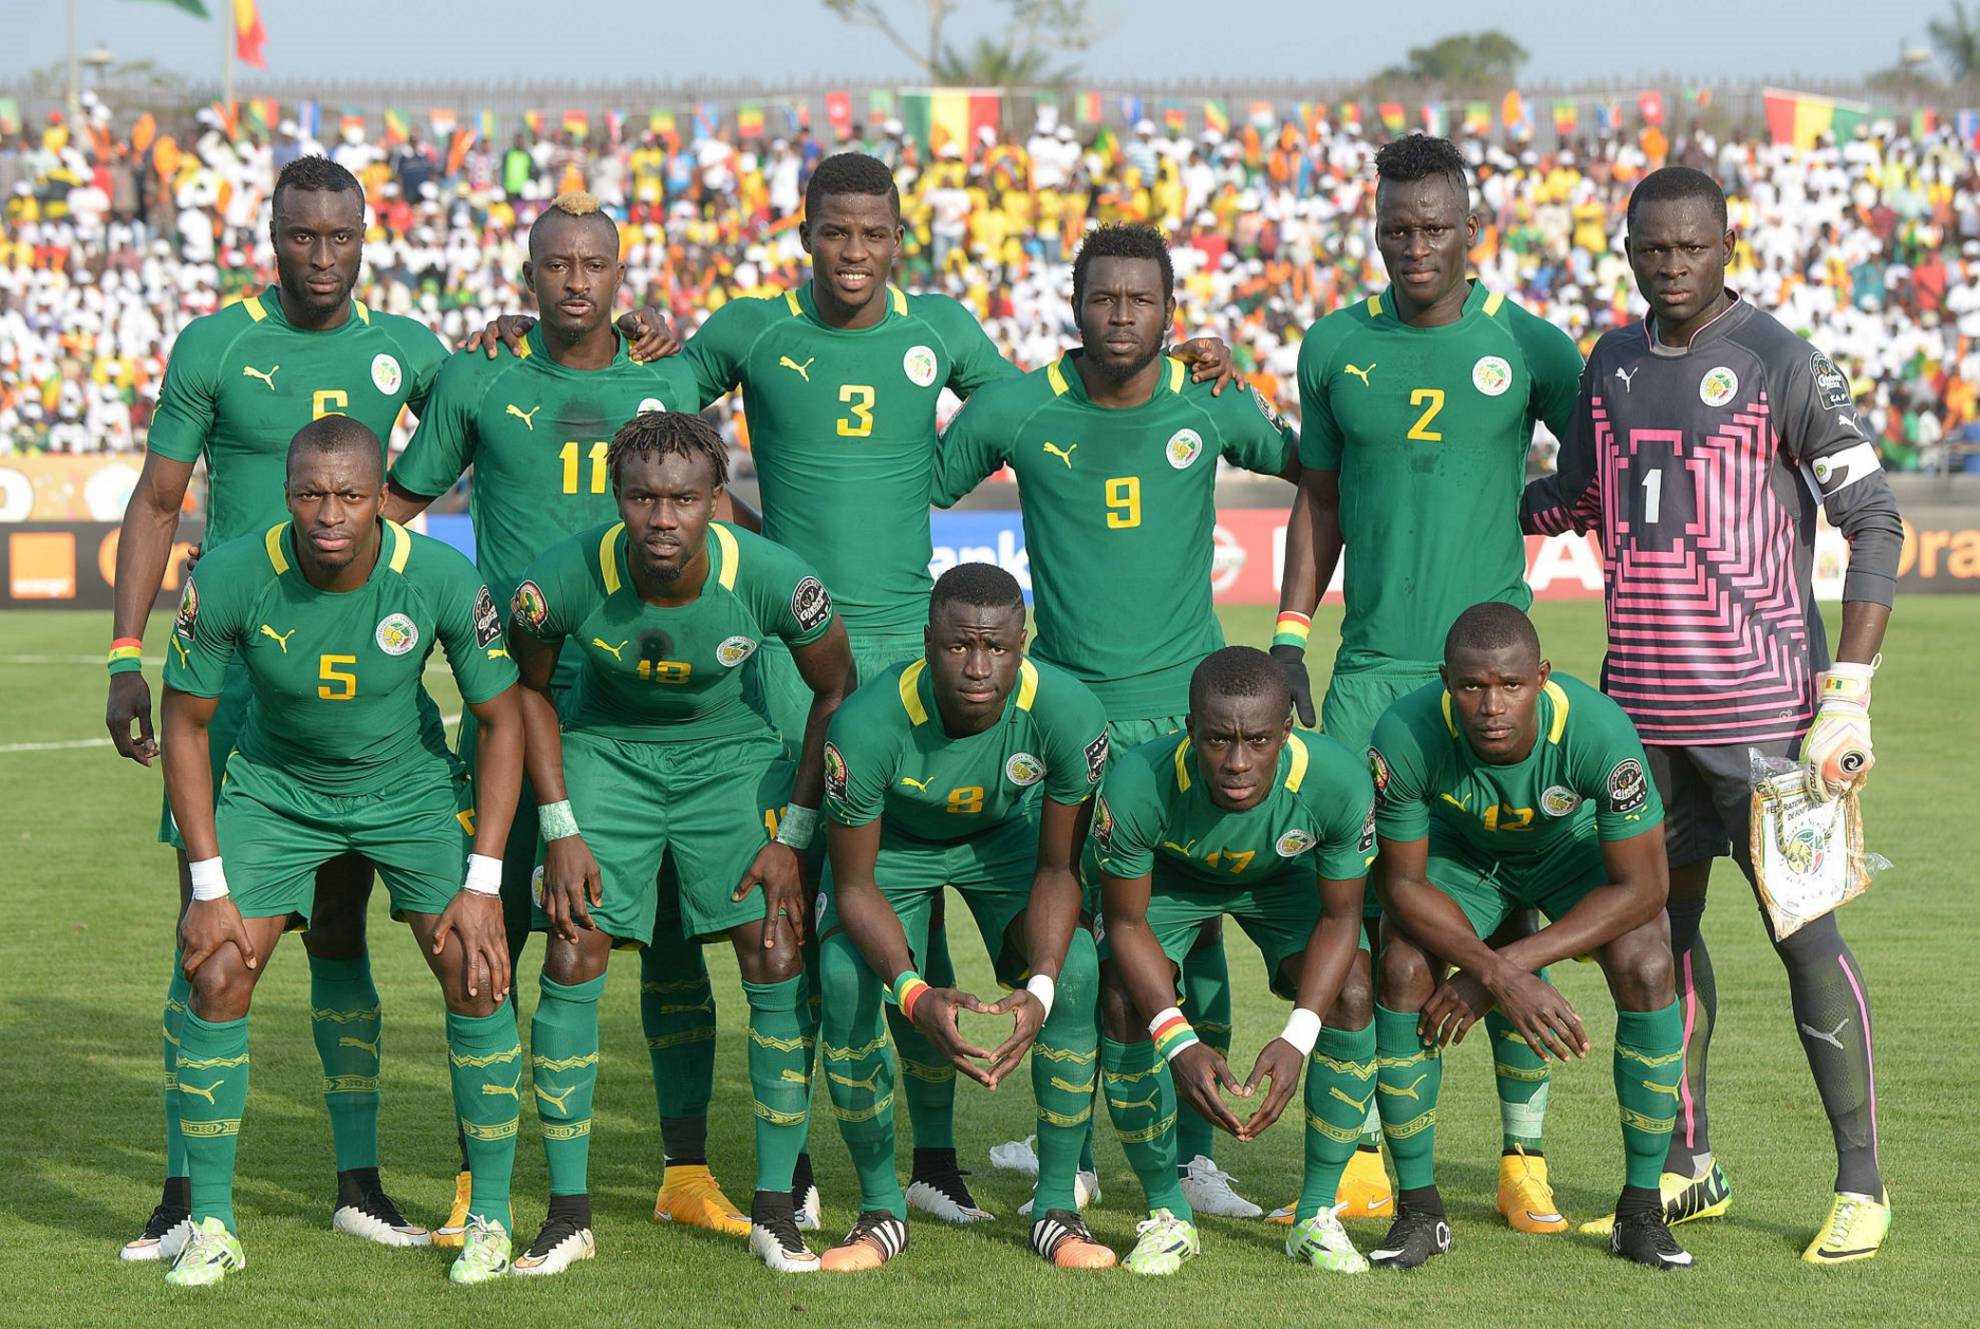 Alineación de Senegal en el Mundial 2018